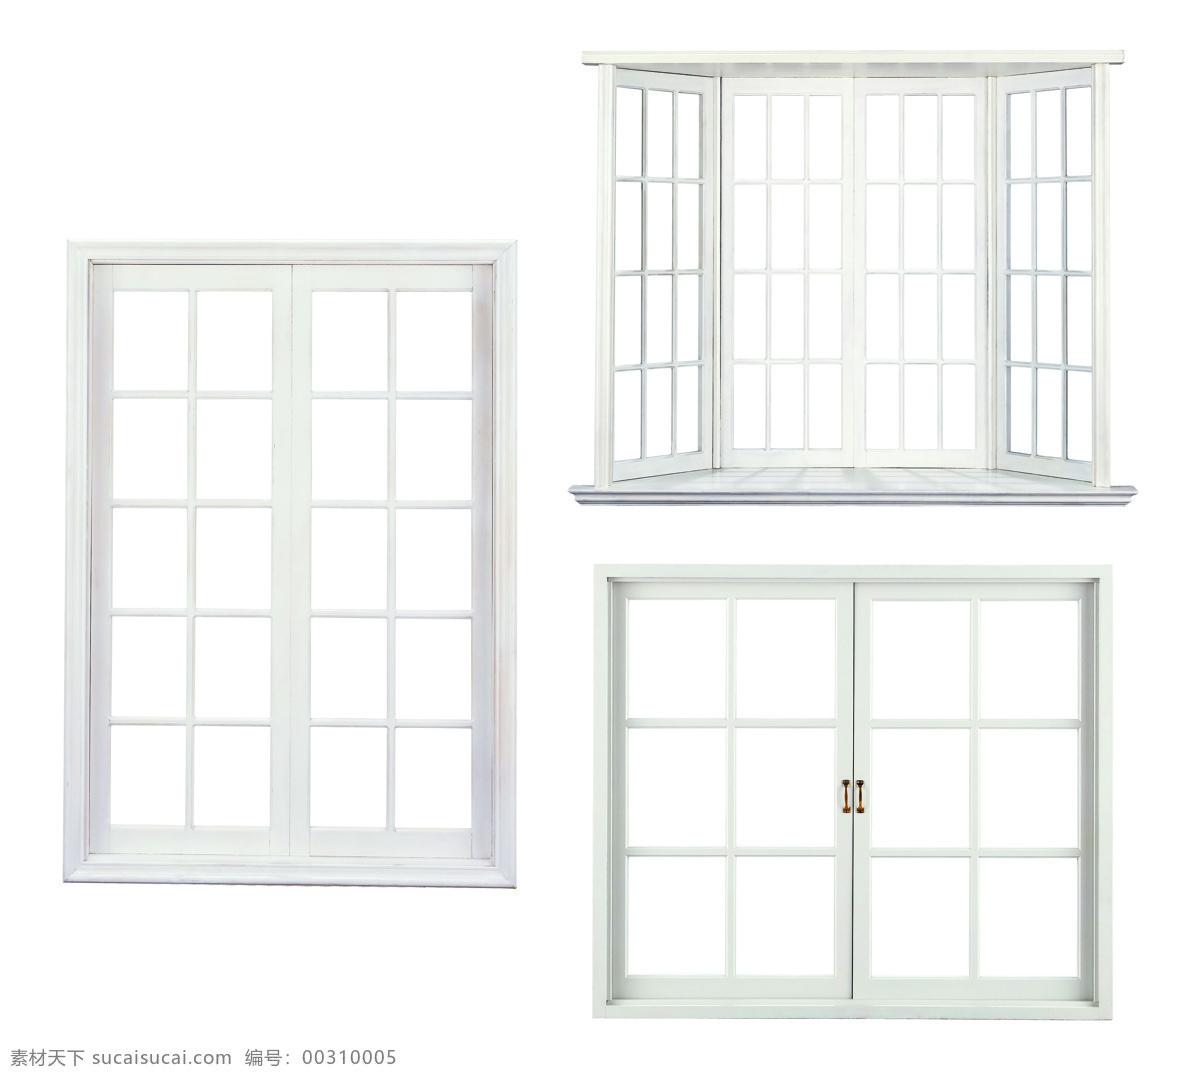 现代 风格 窗户 窗口 白色窗户 拉手 室内设计 其他类别 生活百科